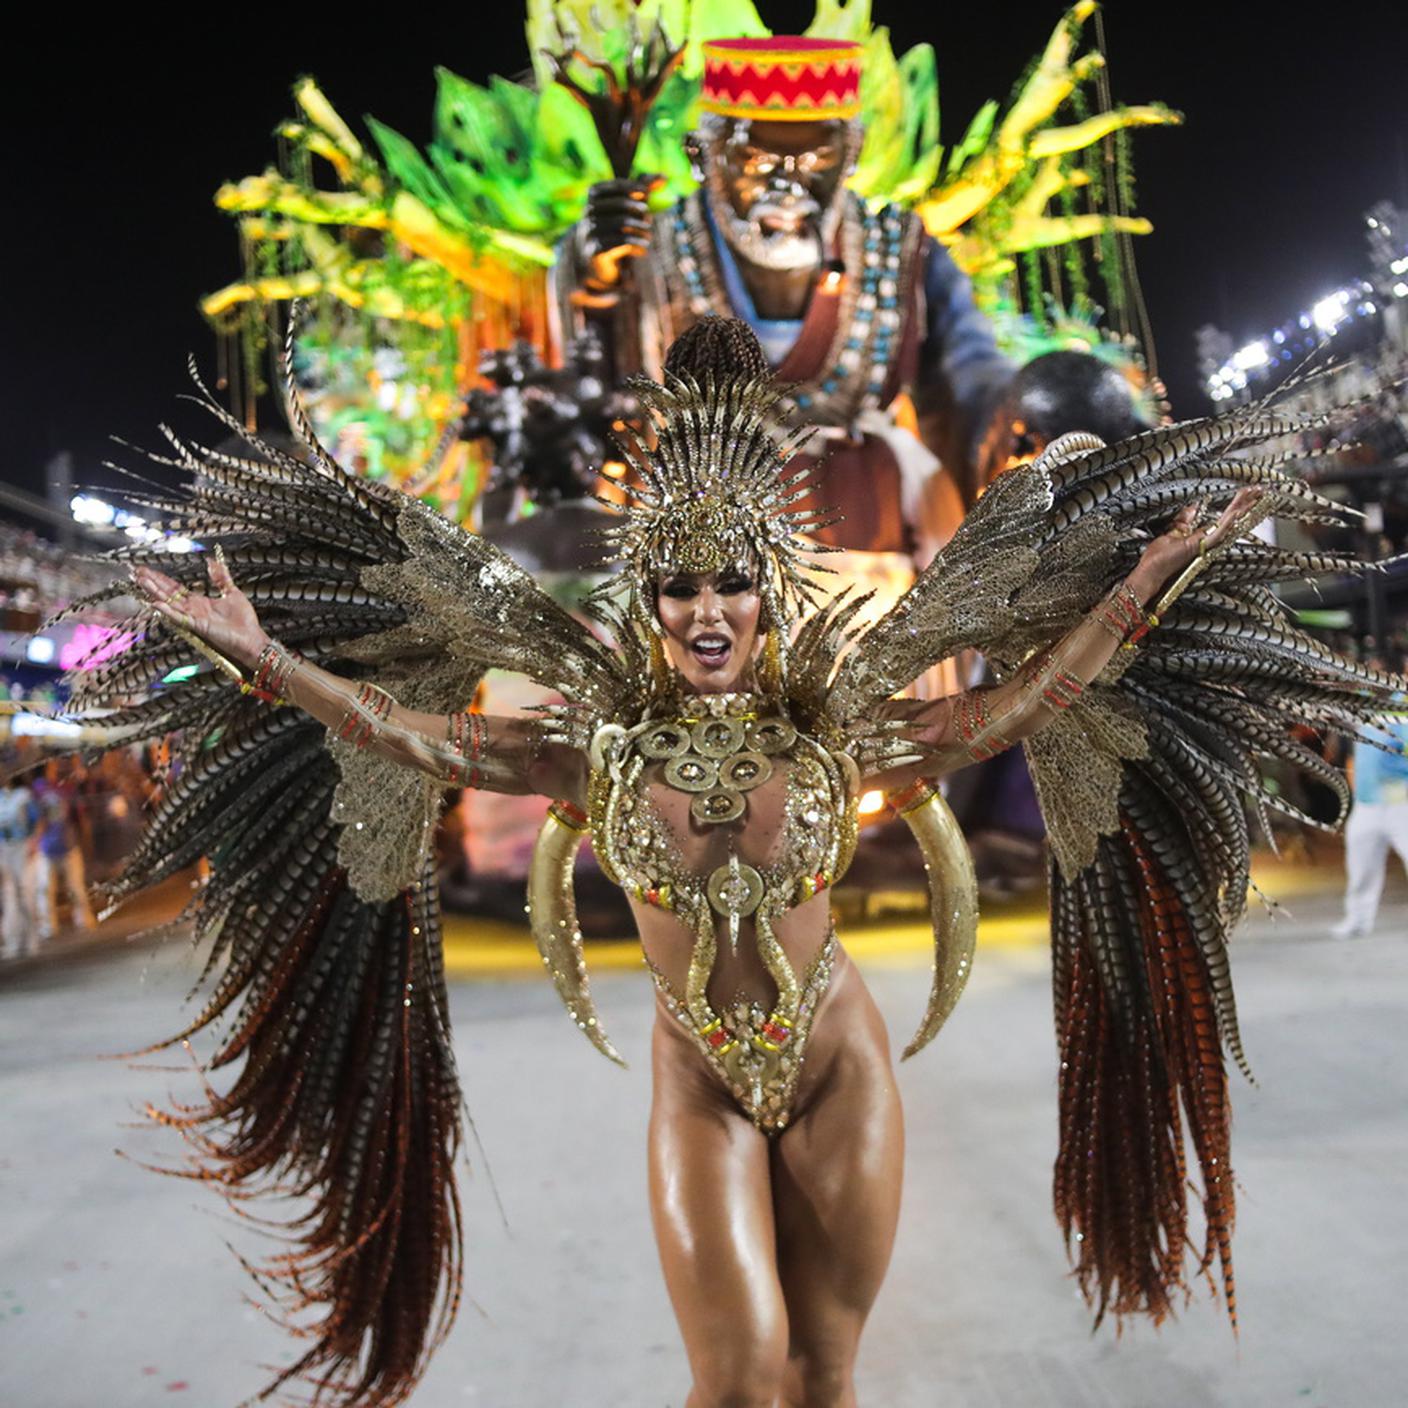 Una ragazza balla la "Samba" durante una sfilata di carnevale al Sambodromo di Rio de Janeiro, Brasile